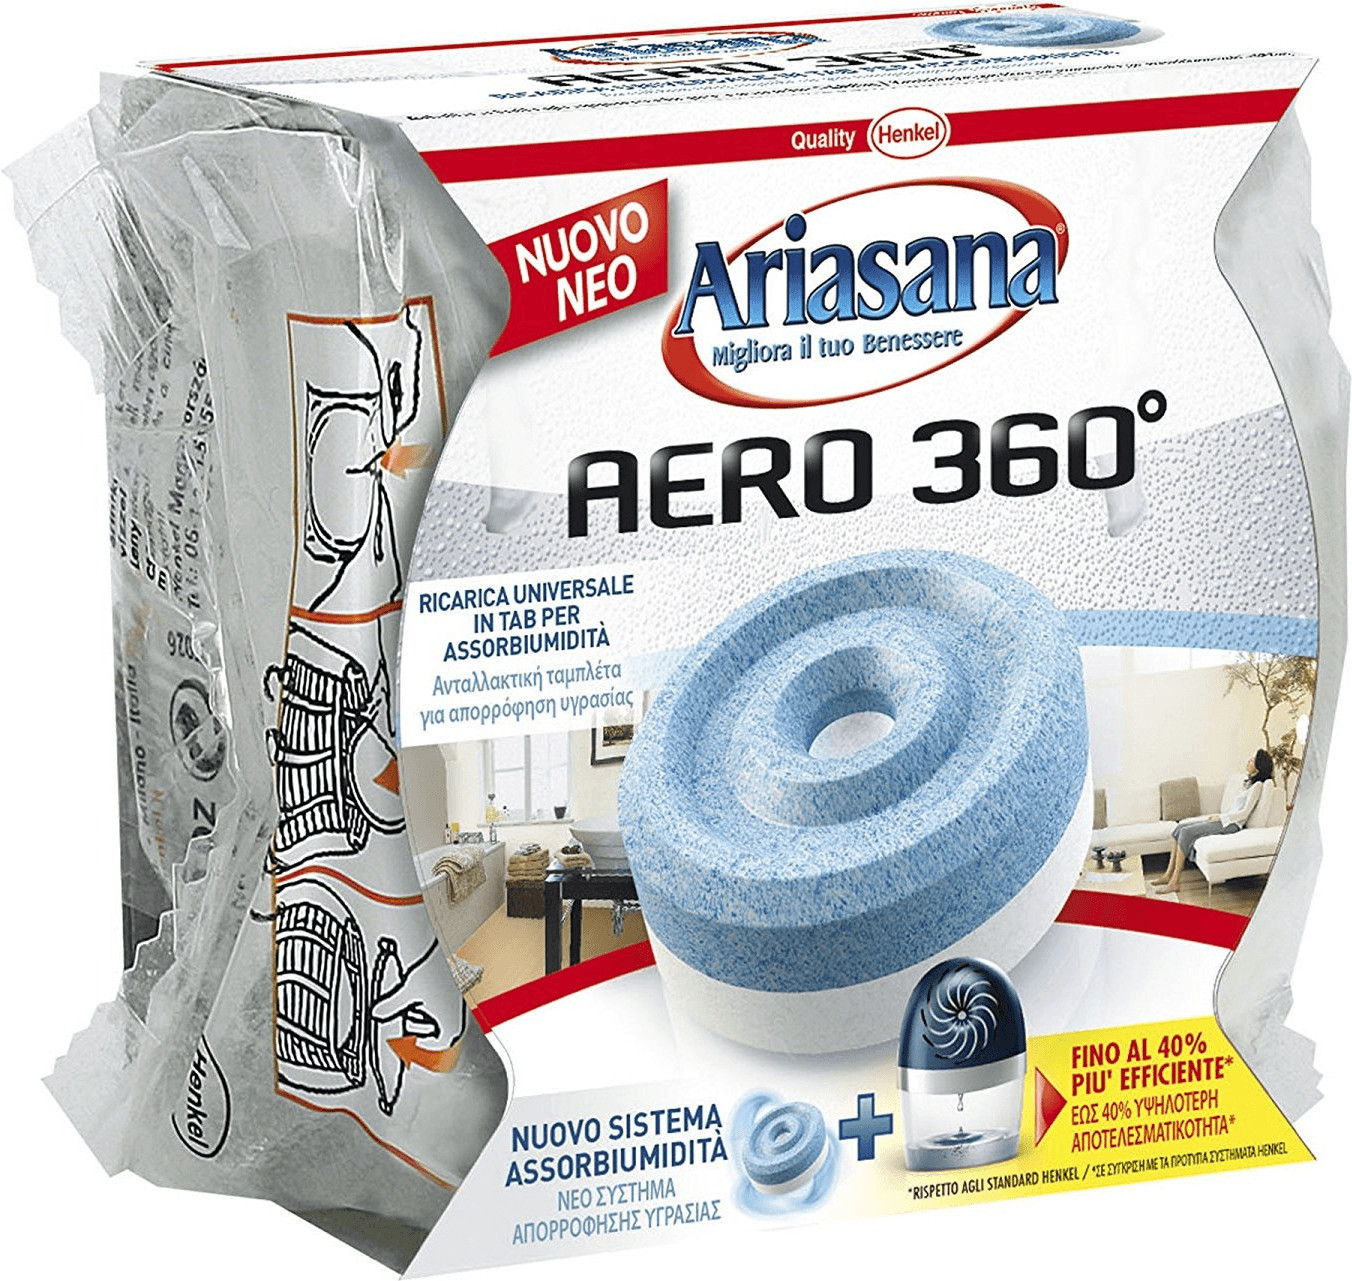 Ariasana Aero 360° Sistema Assorbiumidità Kit Aerodinamico + Tab 450 g